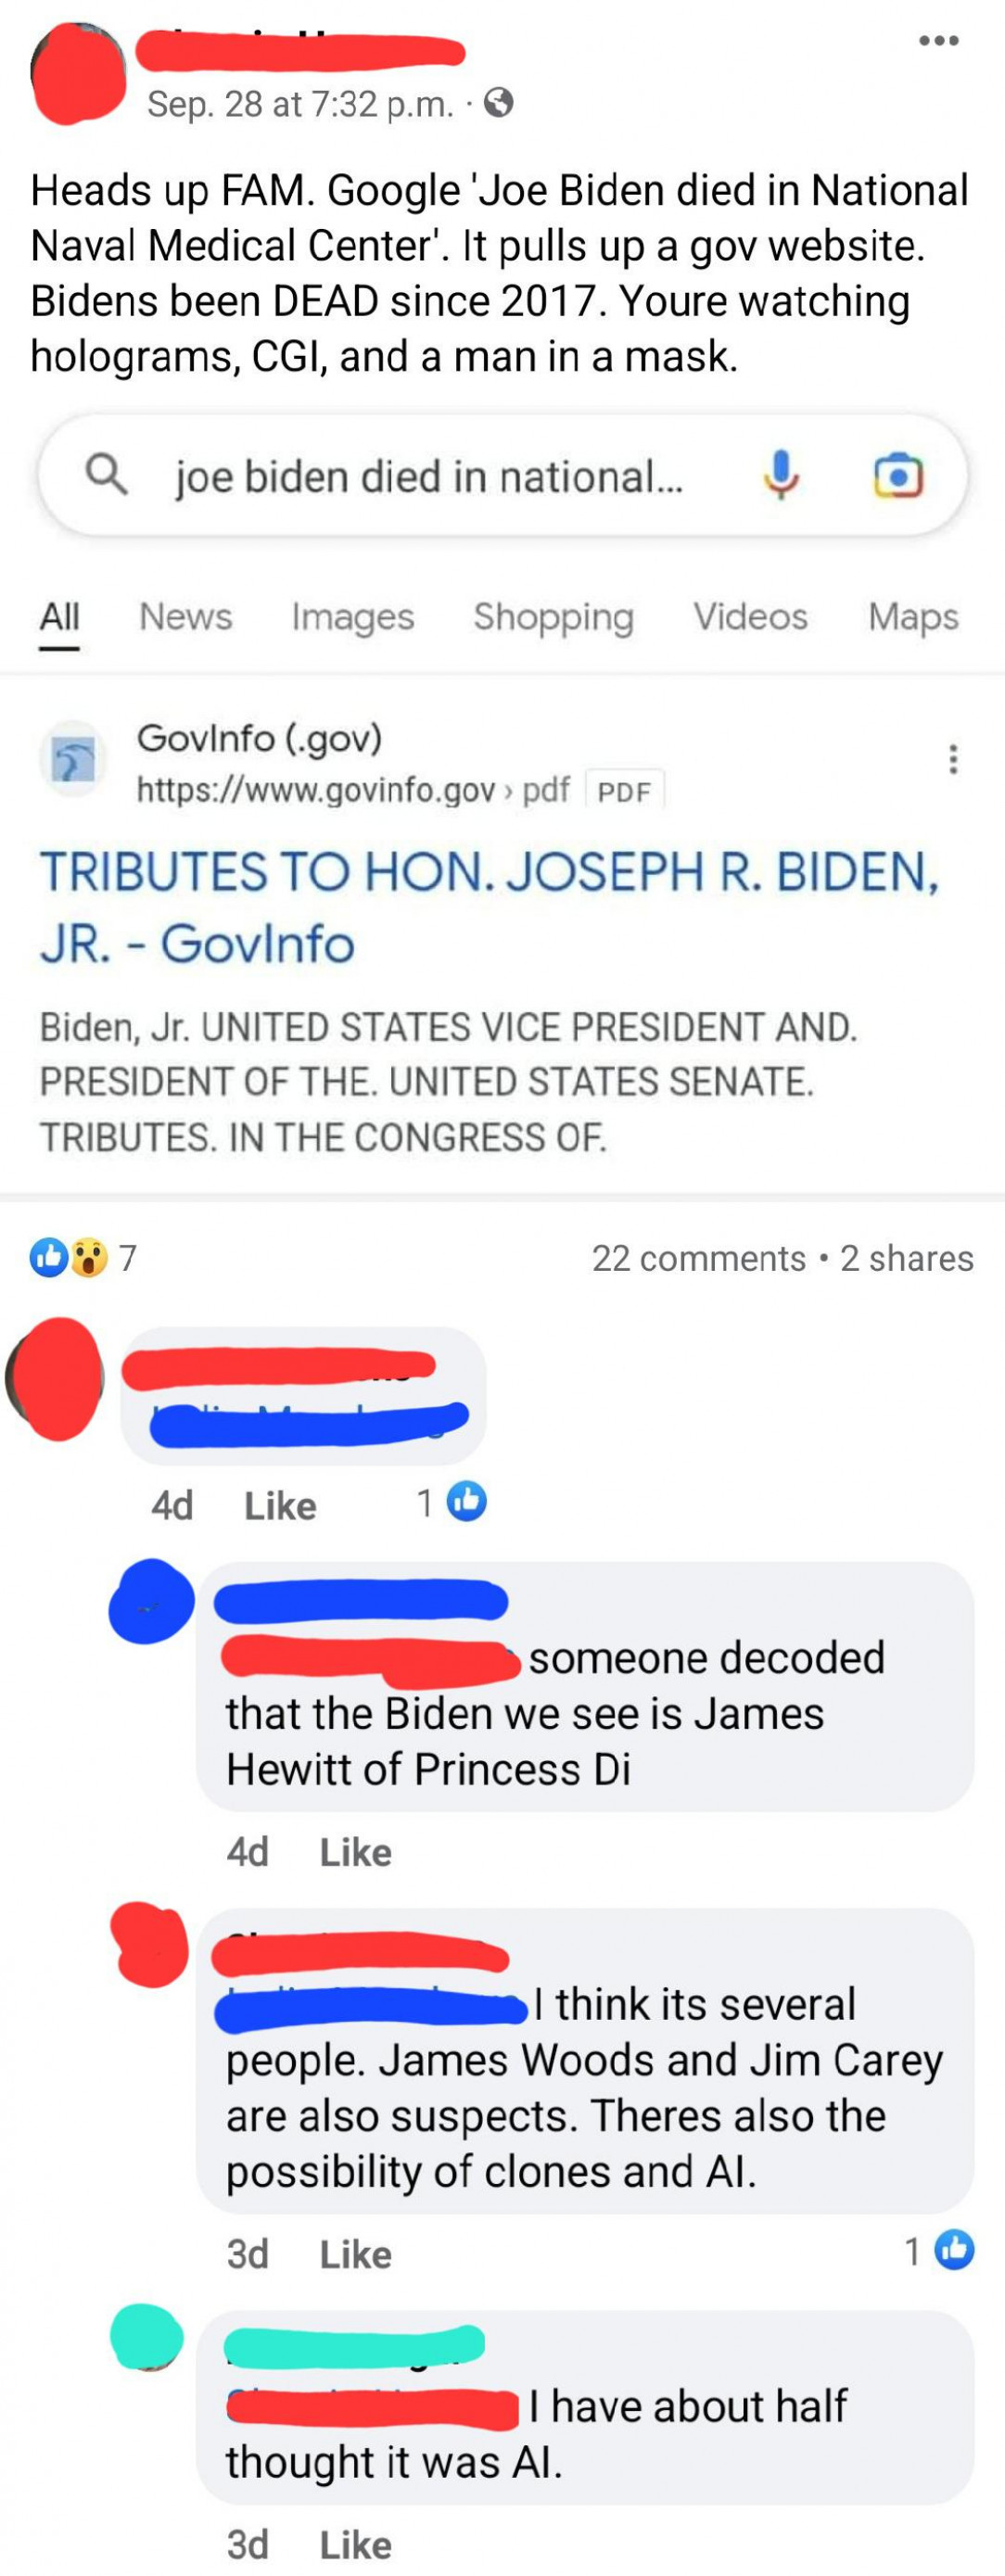 Biden has been dead since 2017!